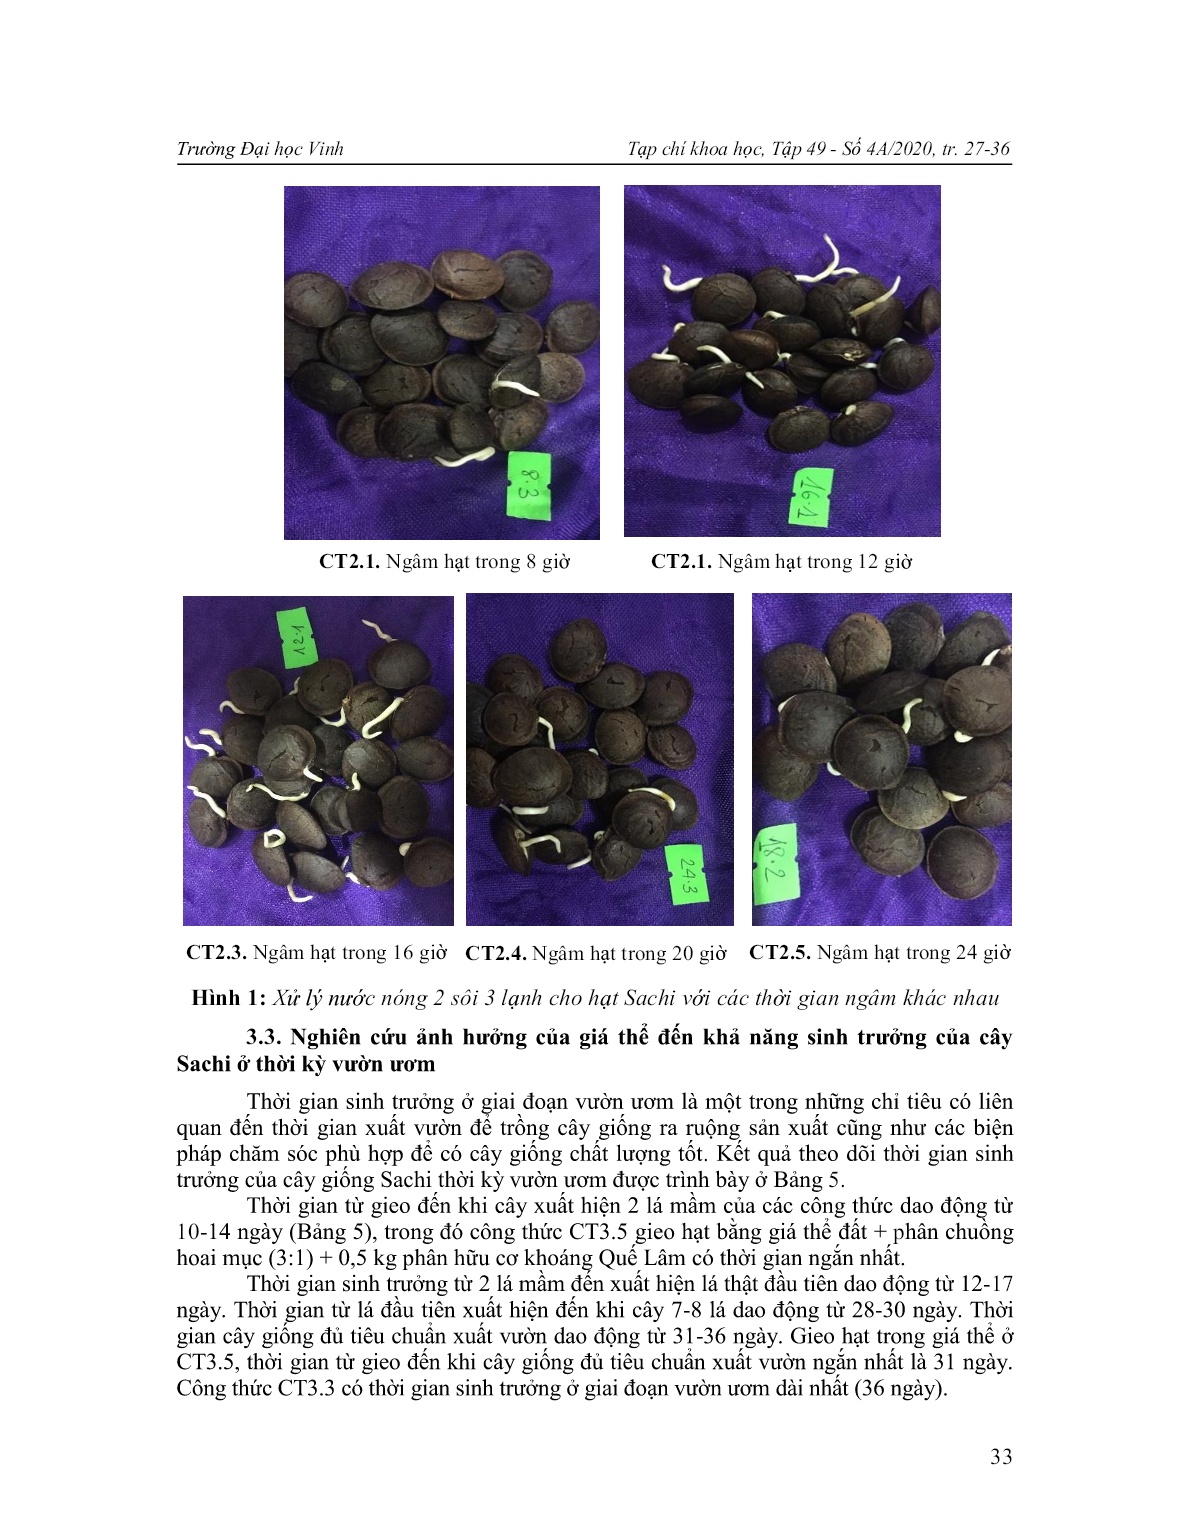 Nghiên cứu biện pháp xử lý nước nóng đến khả năng nảy mầm của hạt và ảnh hưởng của giá thể đến sinh trưởng của cây sachi (Plukenetia volubilis L.) thời kỳ vườn ươm tại Nghệ An trang 7